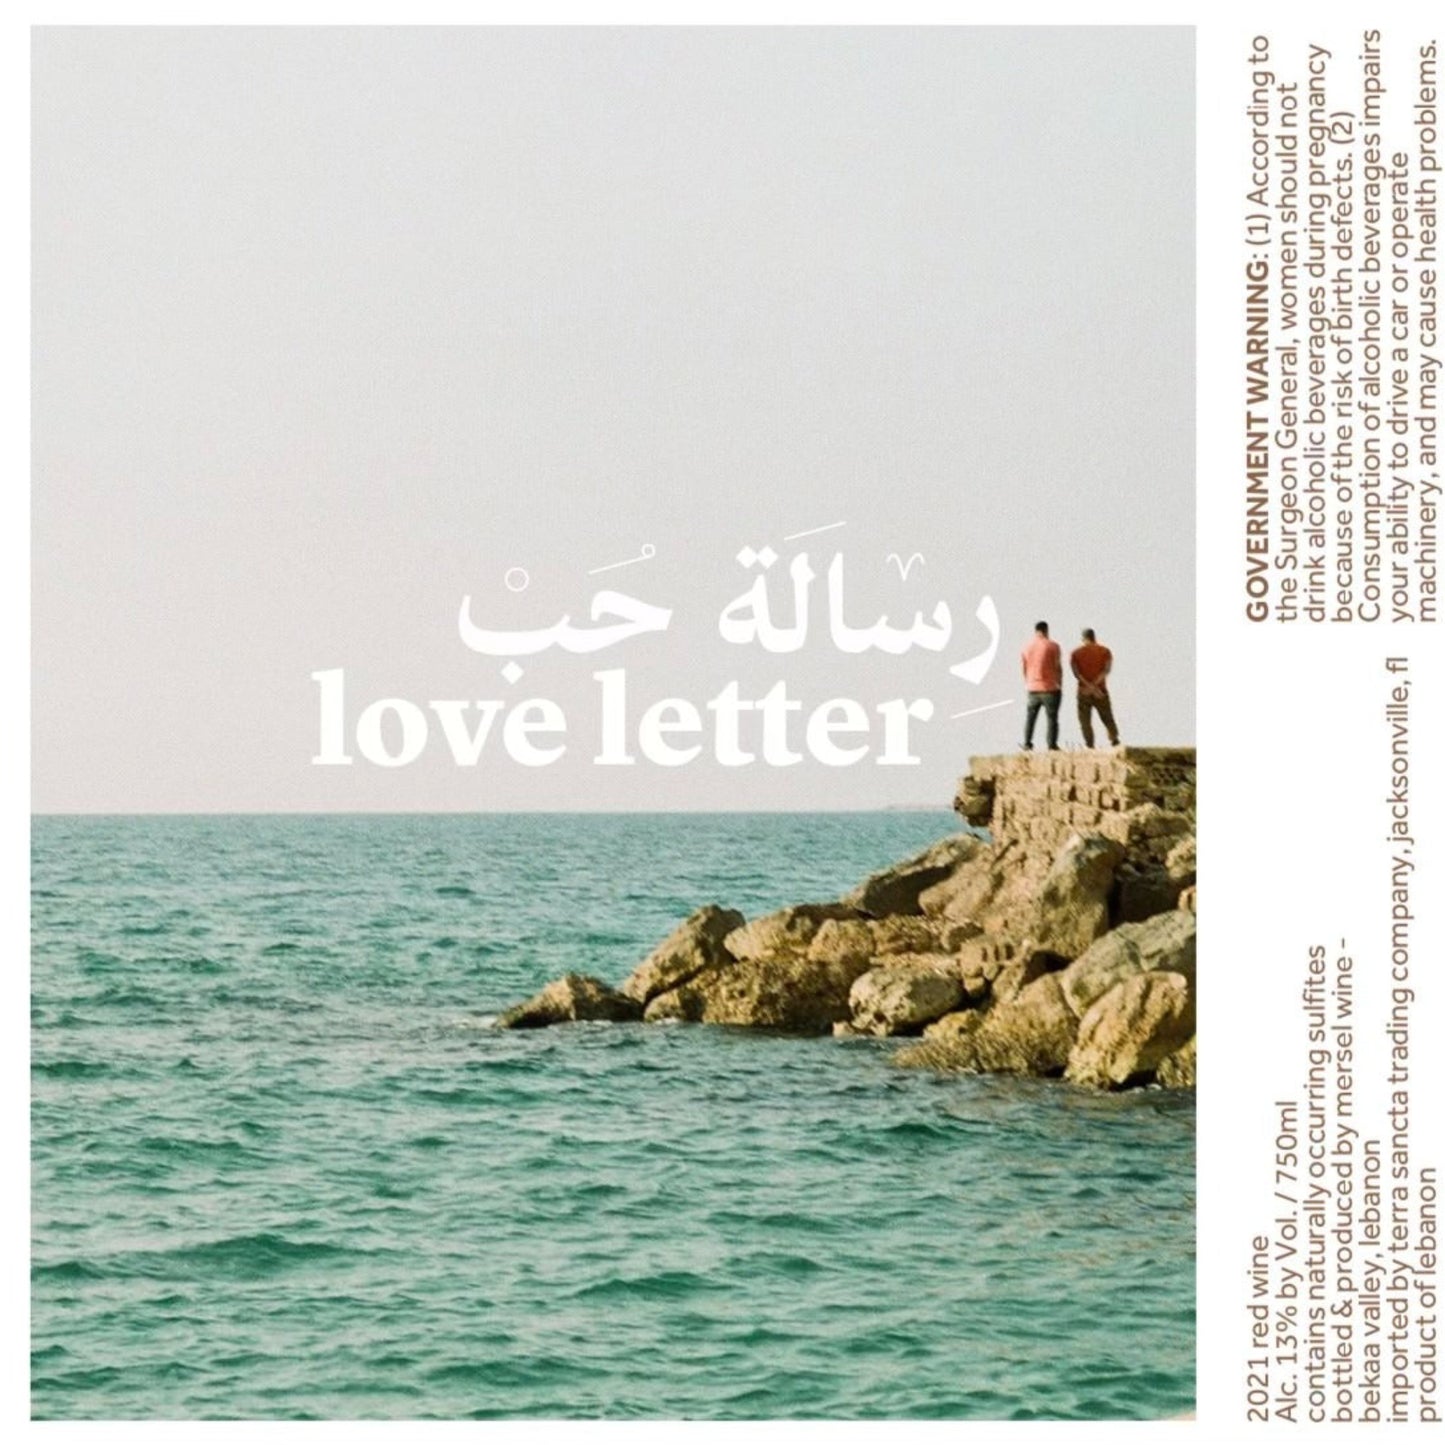 Love Letter by Laila Merlot 2021 (750 ml)